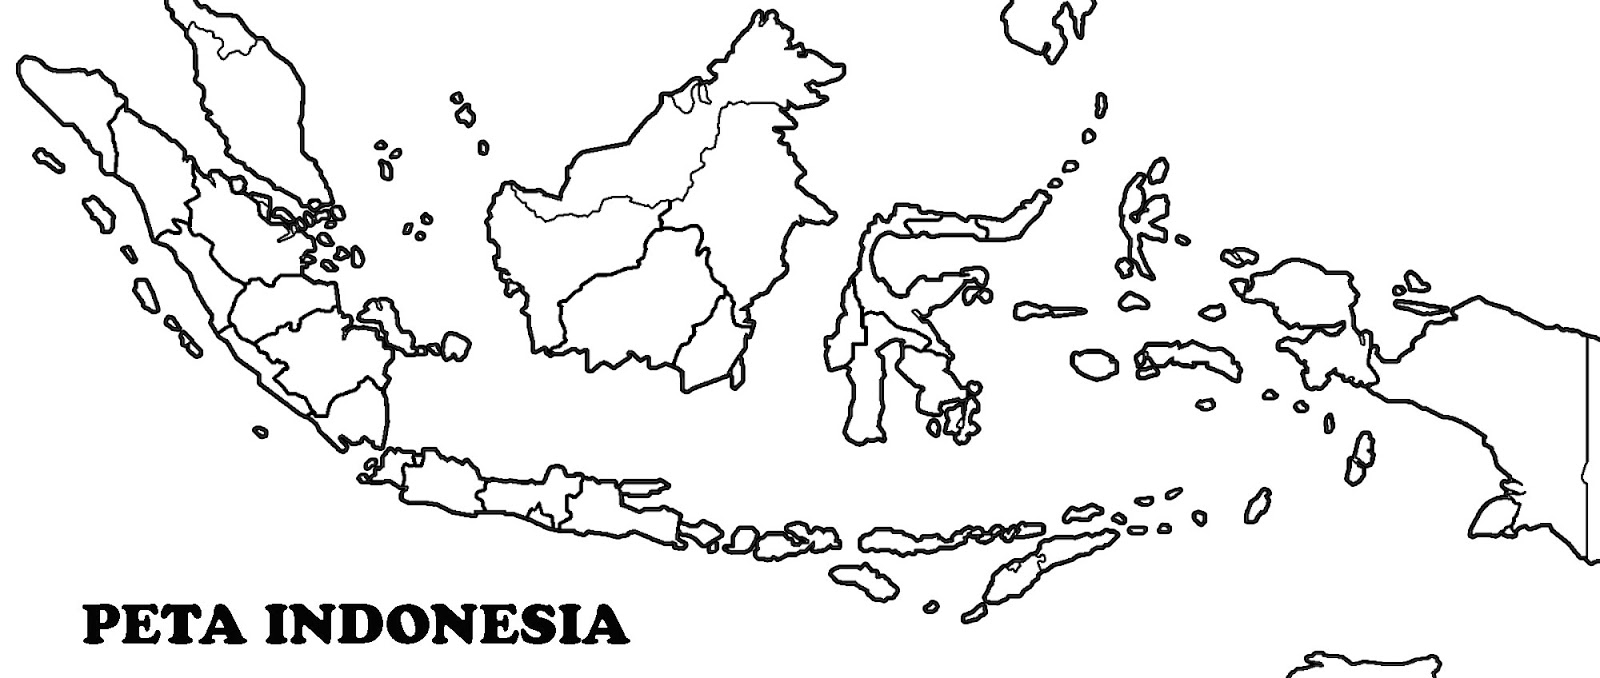  Peta  Indonesia  terbaru 2020 peta  buta  dan peta  lengkap